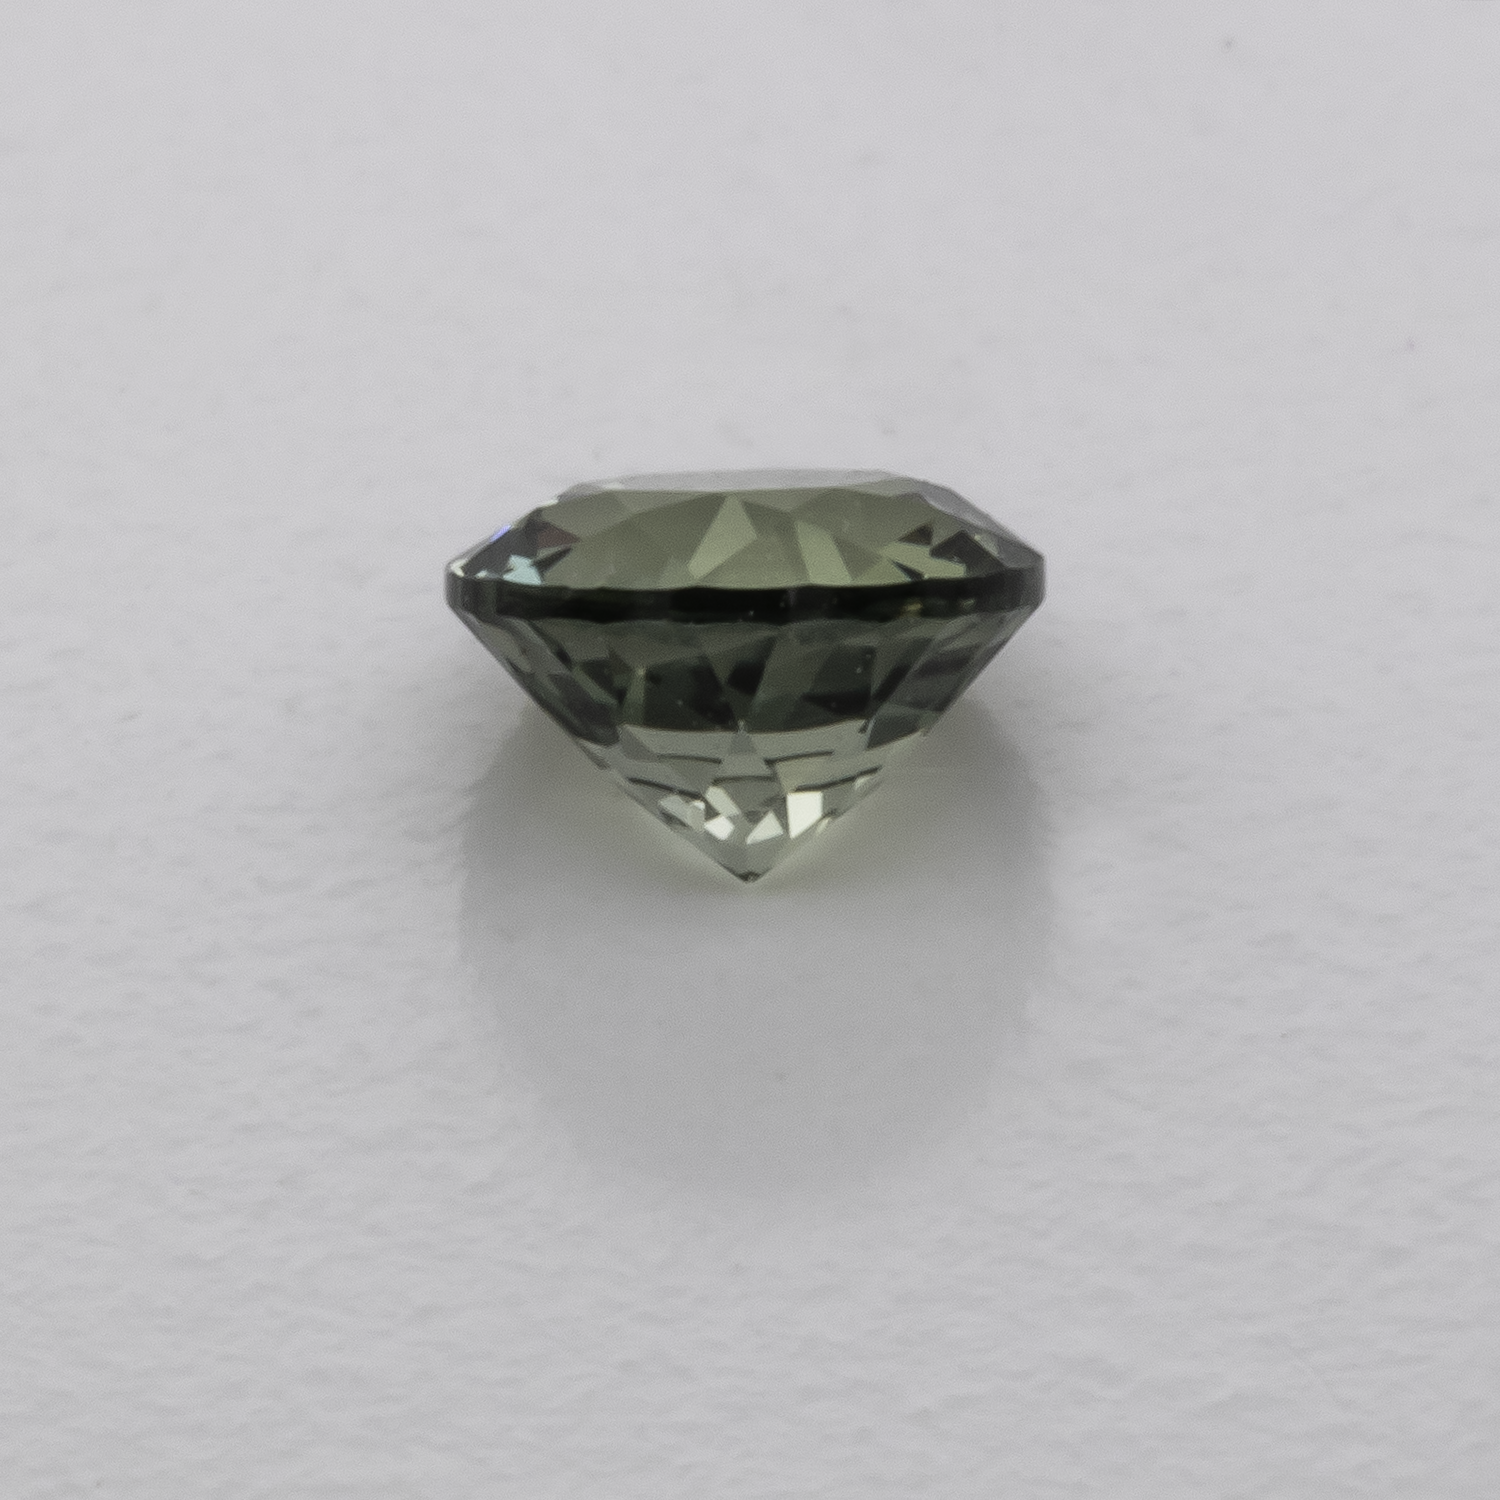 Saphir - grün, rund, 4,1x4,1 mm, 0,35 cts, Nr. XSR11194